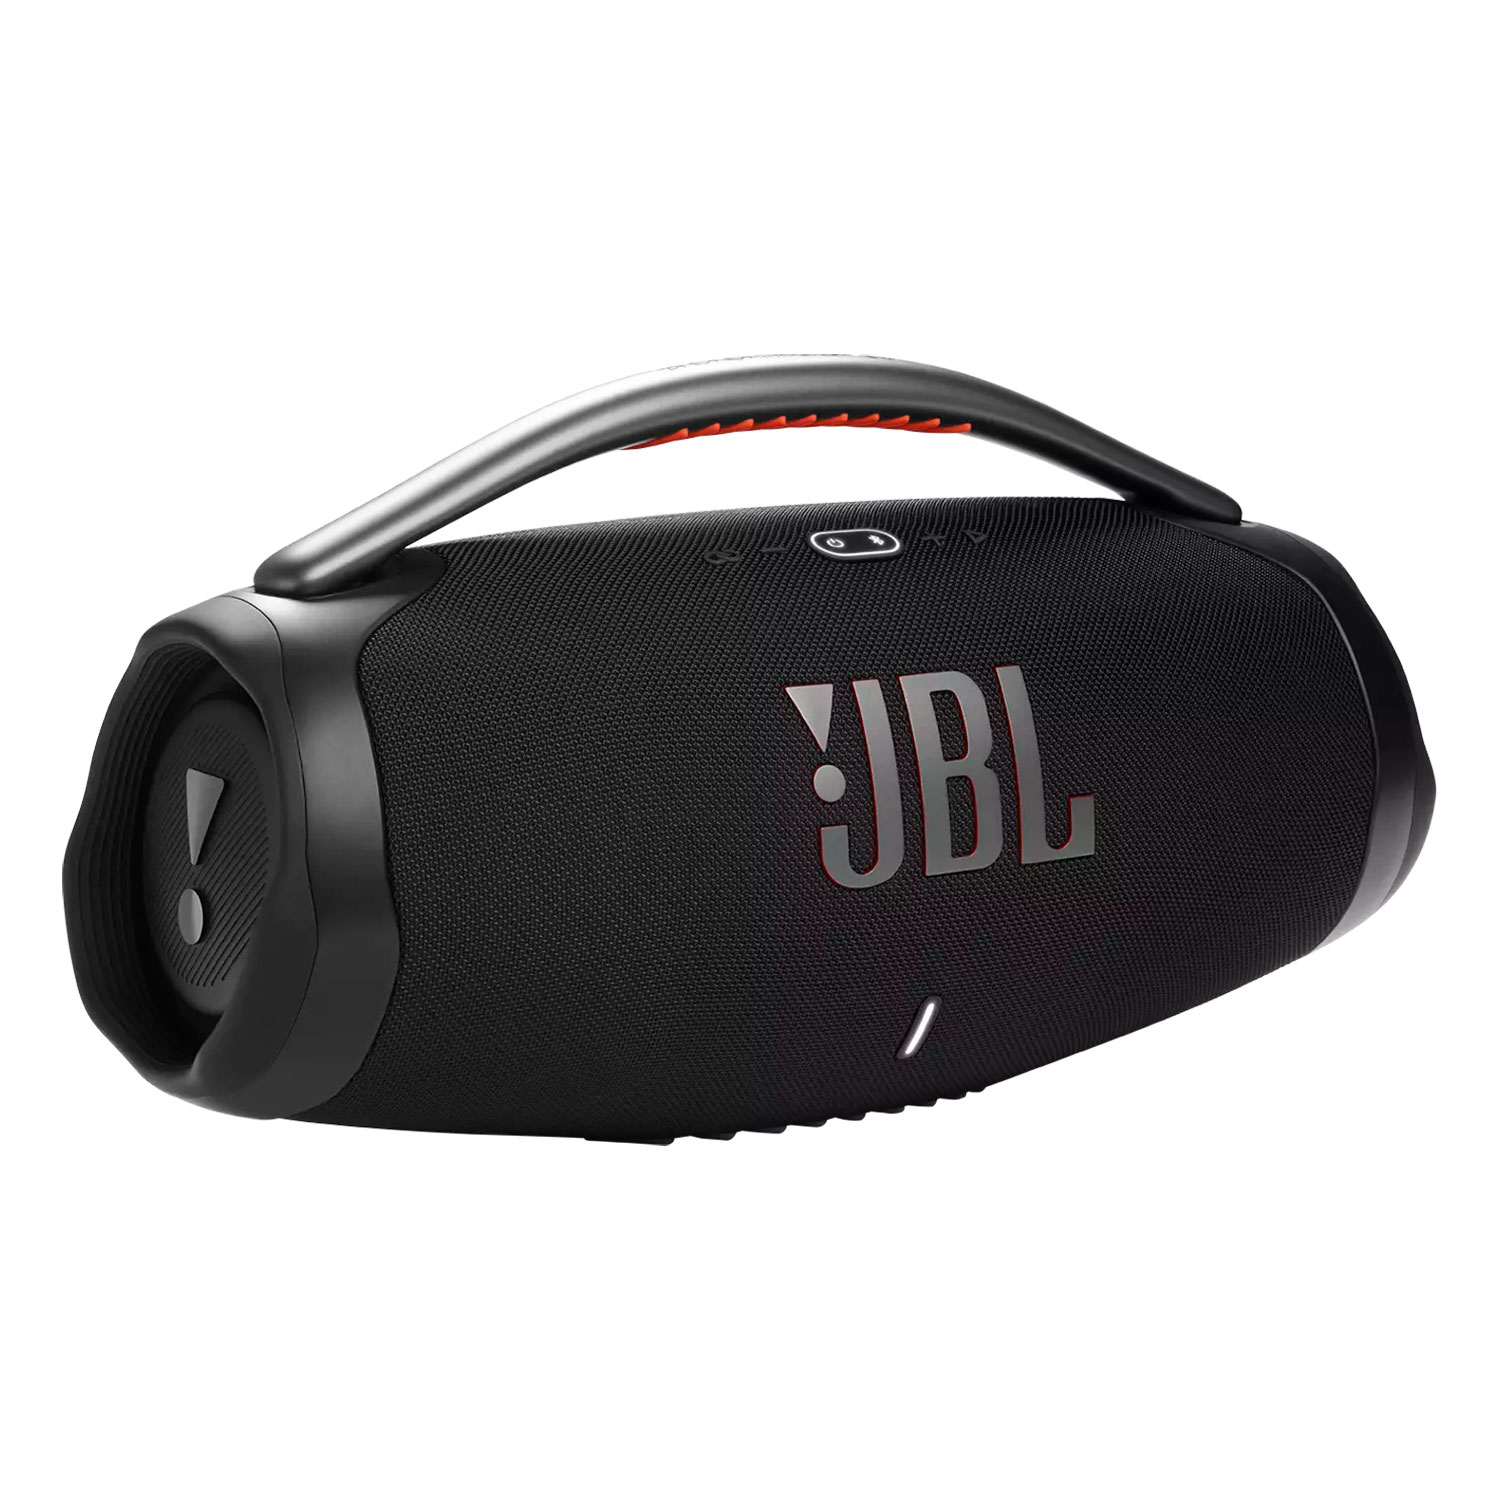 Caixa de Som JBL Boombox 3 - Preto (Caixa Danificada)